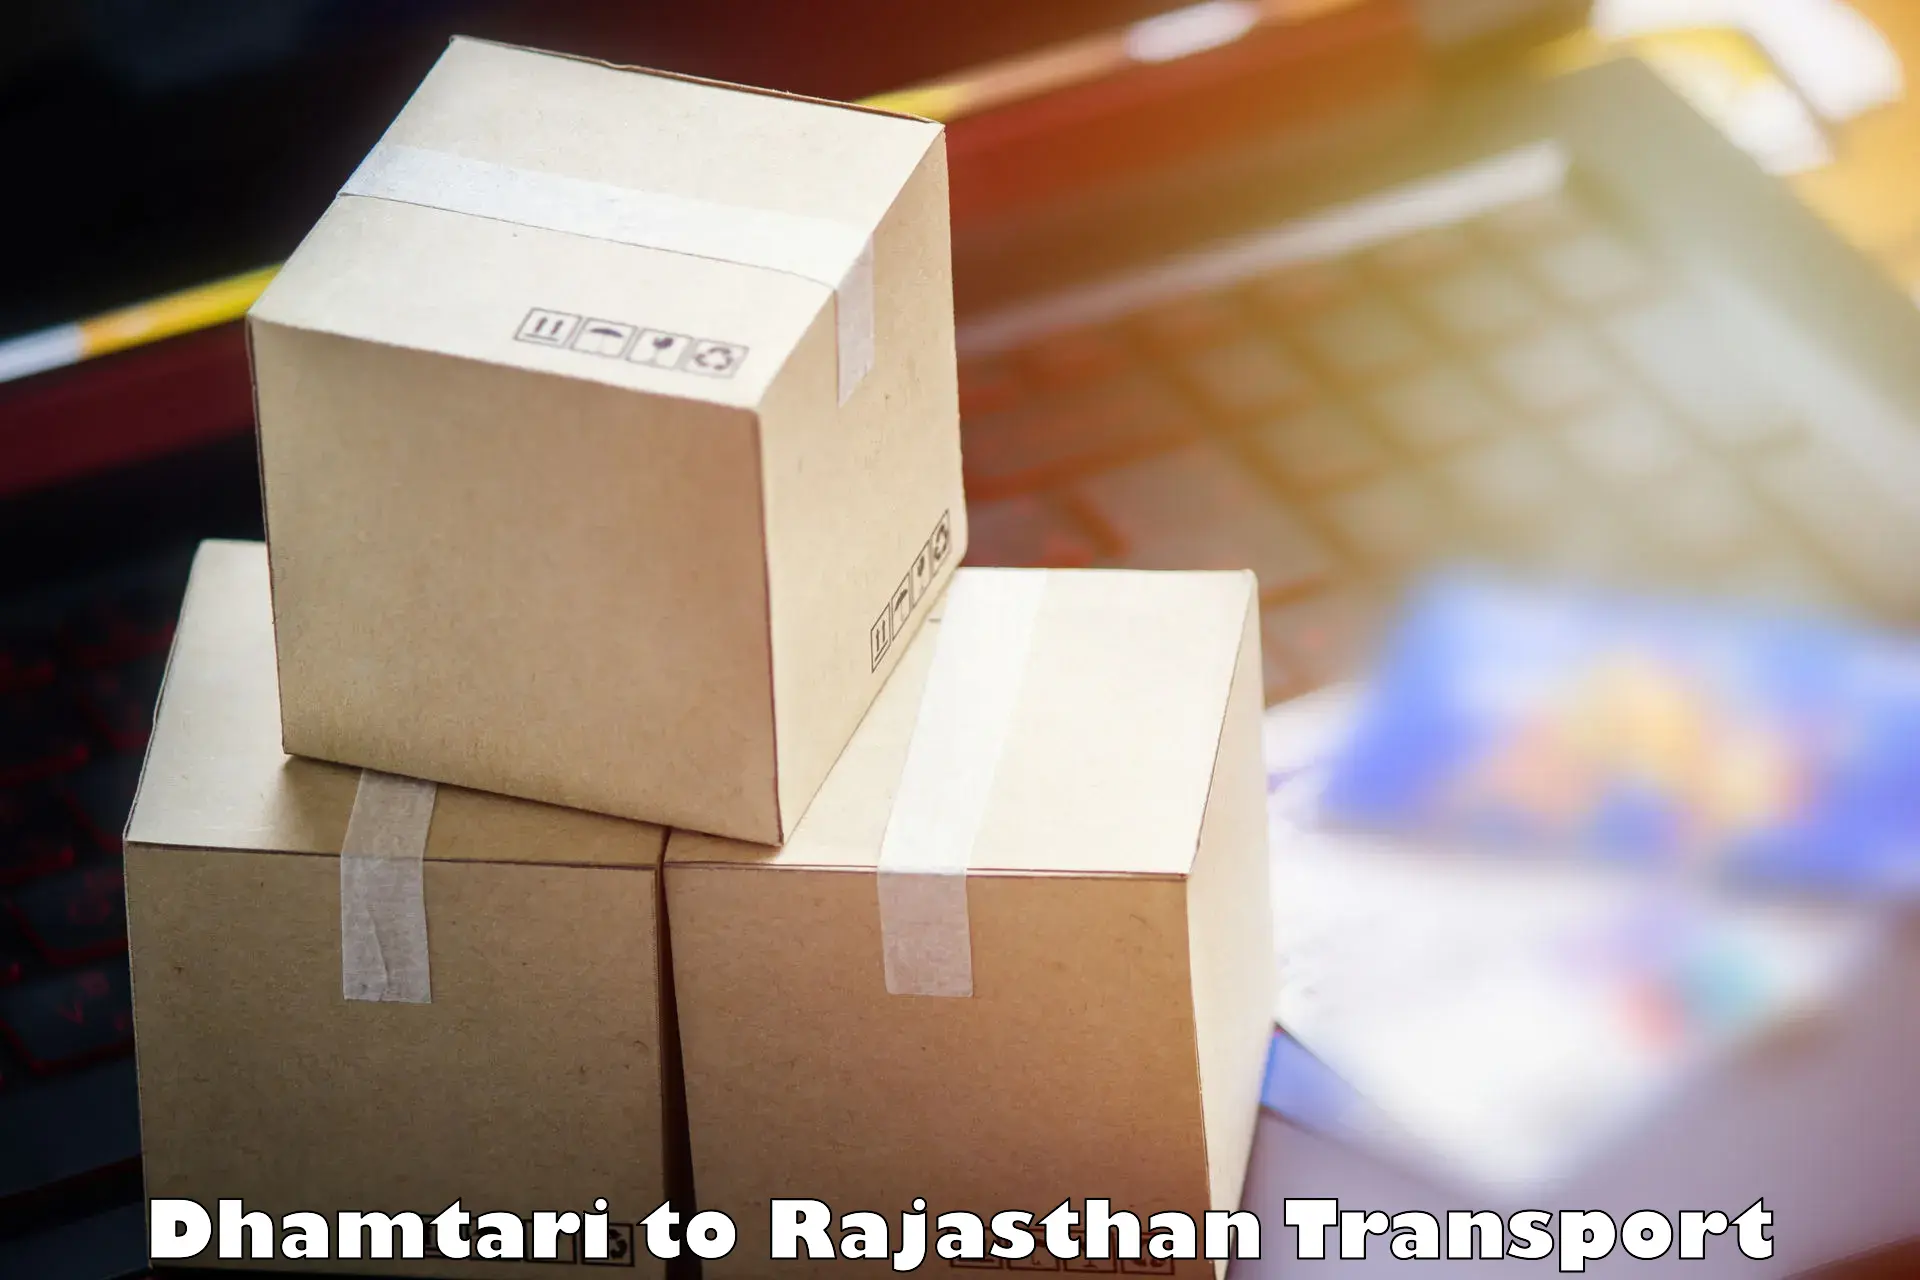 Pick up transport service Dhamtari to Pratapgarh Rajasthan